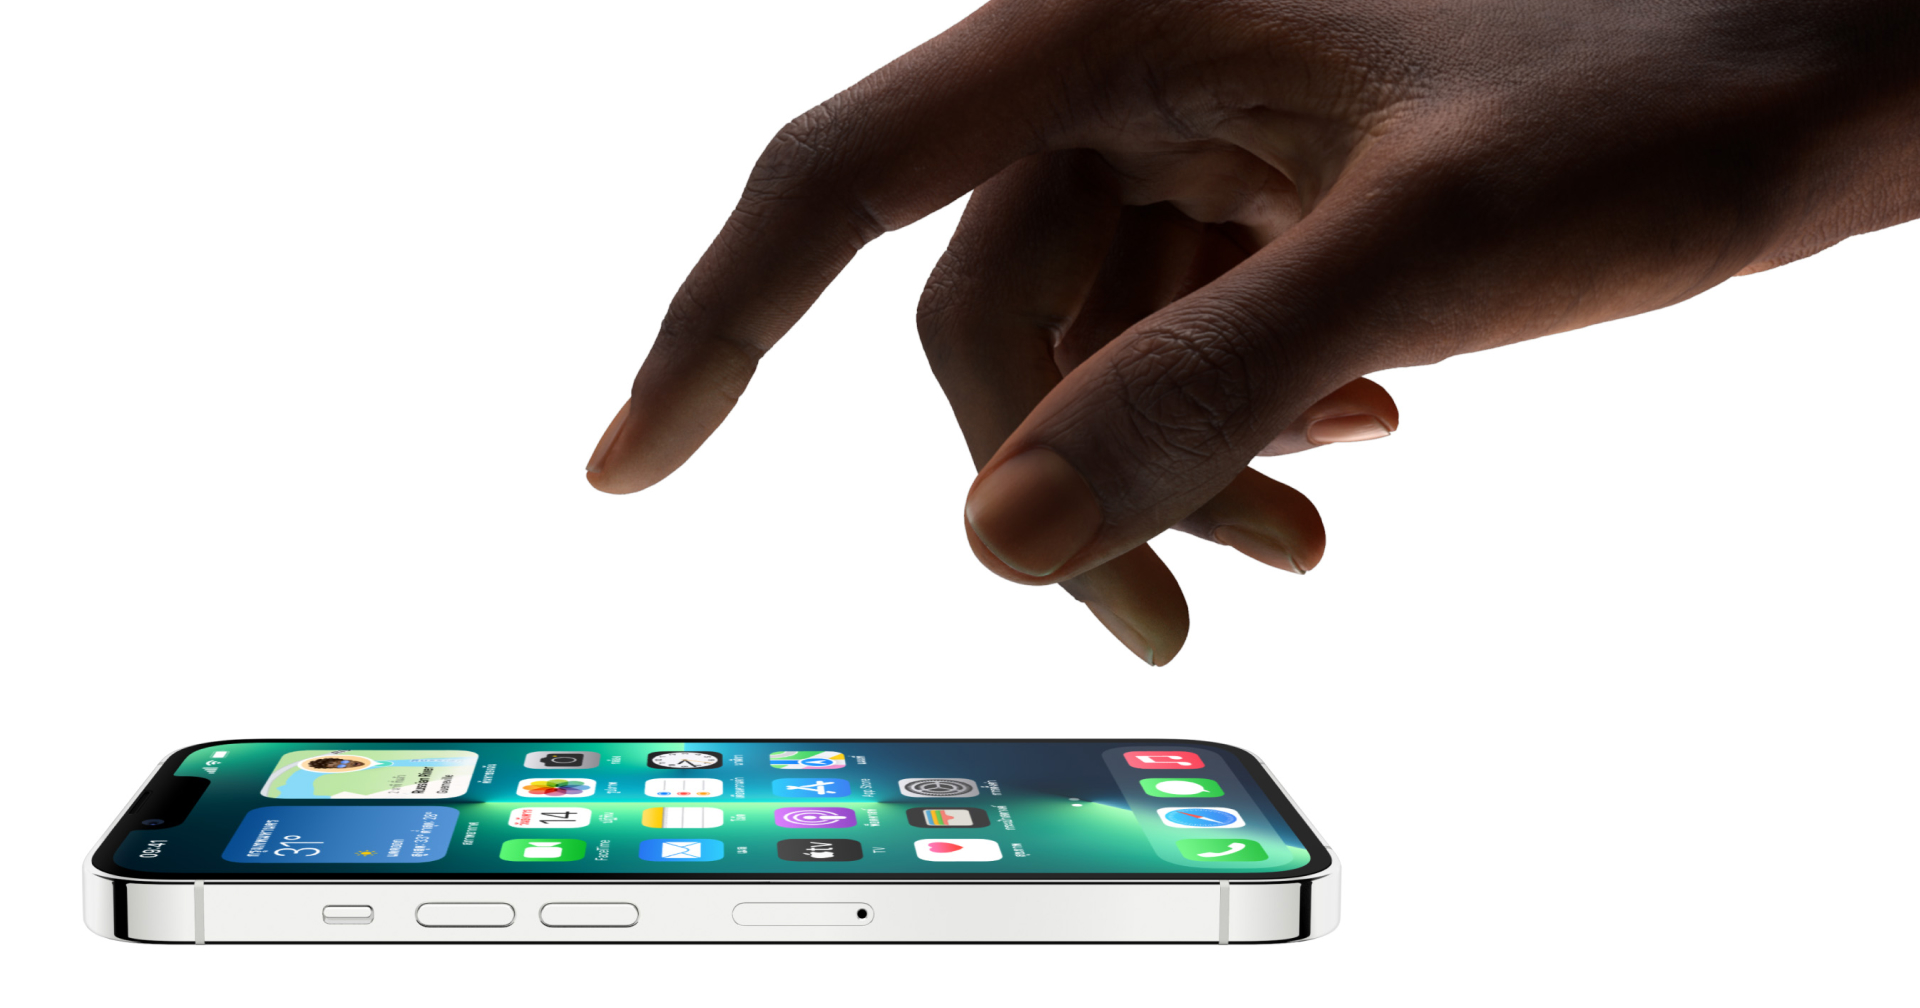 Apple ปฏิเสธกั๊กจอ ProMotion ใน iPhone 13 Pro แต่นักพัฒนาภายนอกต้องรอวิธีเปิดใช้ 120Hz